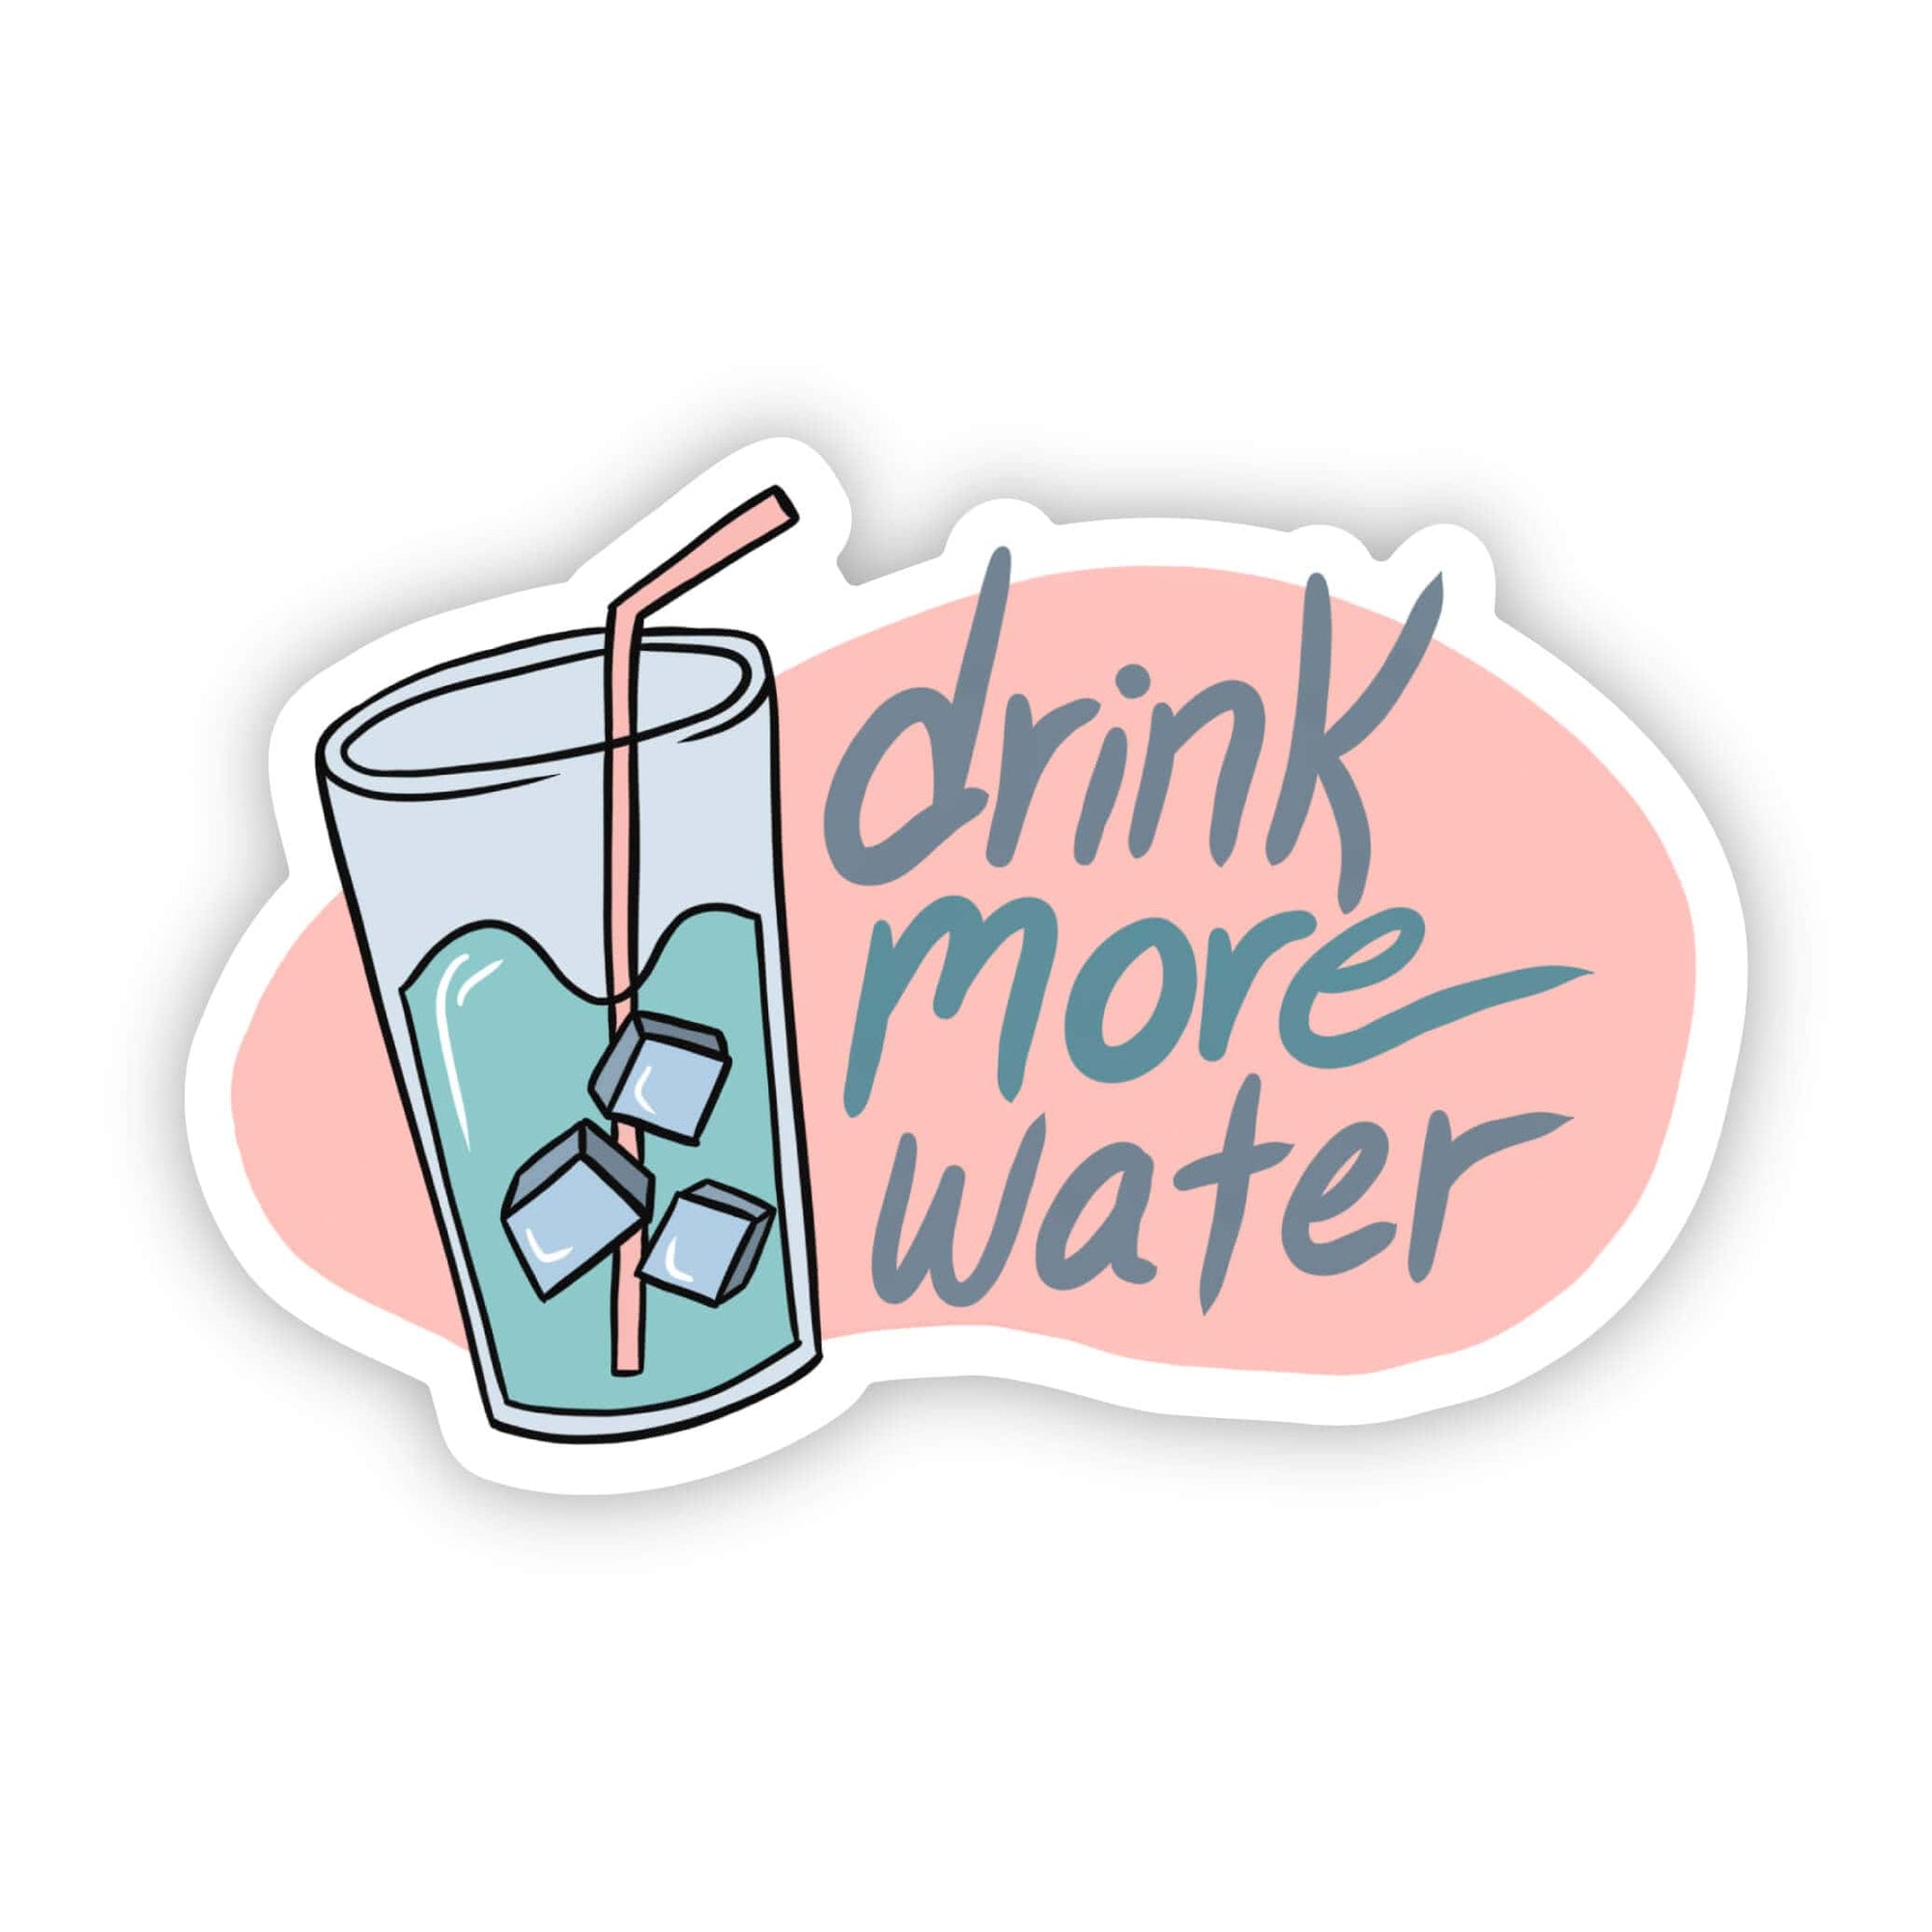 "Drink more water" sticker